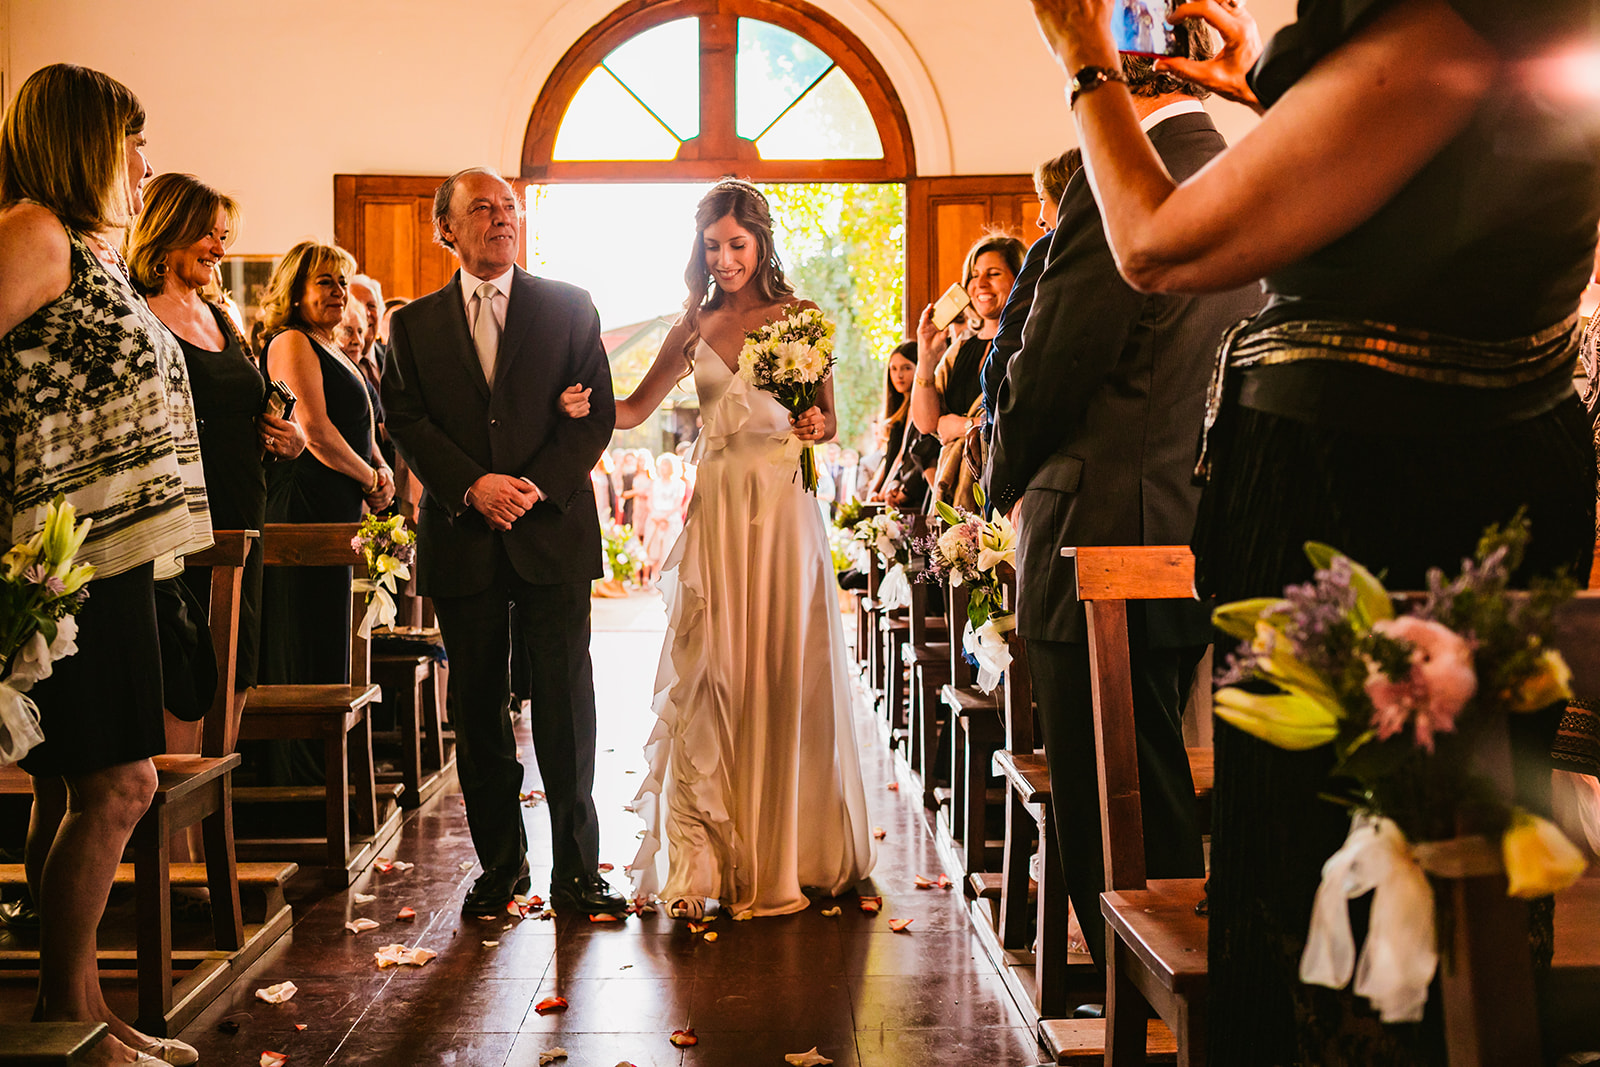 Matrimonio en Casona Perez Ossa, fotos de matrimonio en Santiago de Chile y la V Regiónó, fotos de bodas en Casona Perez